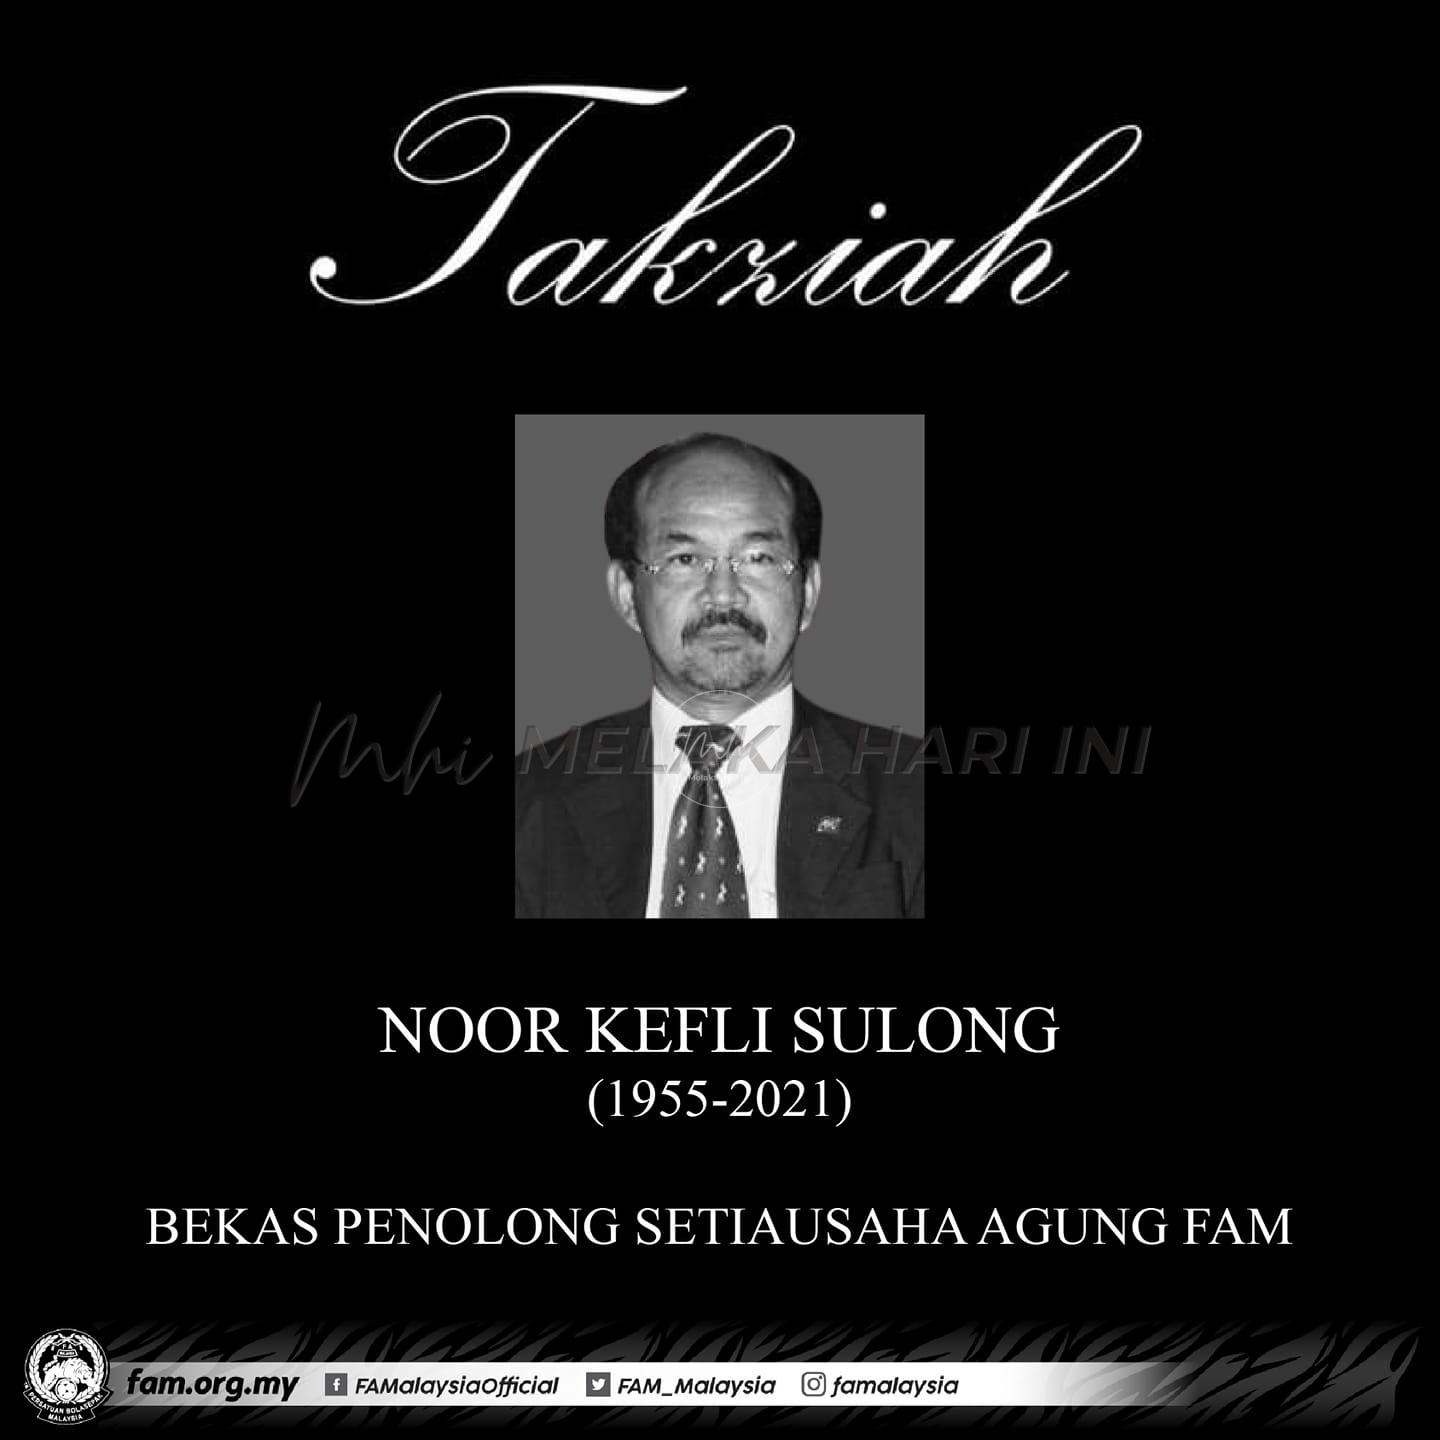 Bekas penolong Setiausaha Agung FAM, Noor Kefli Sulong meninggal dunia